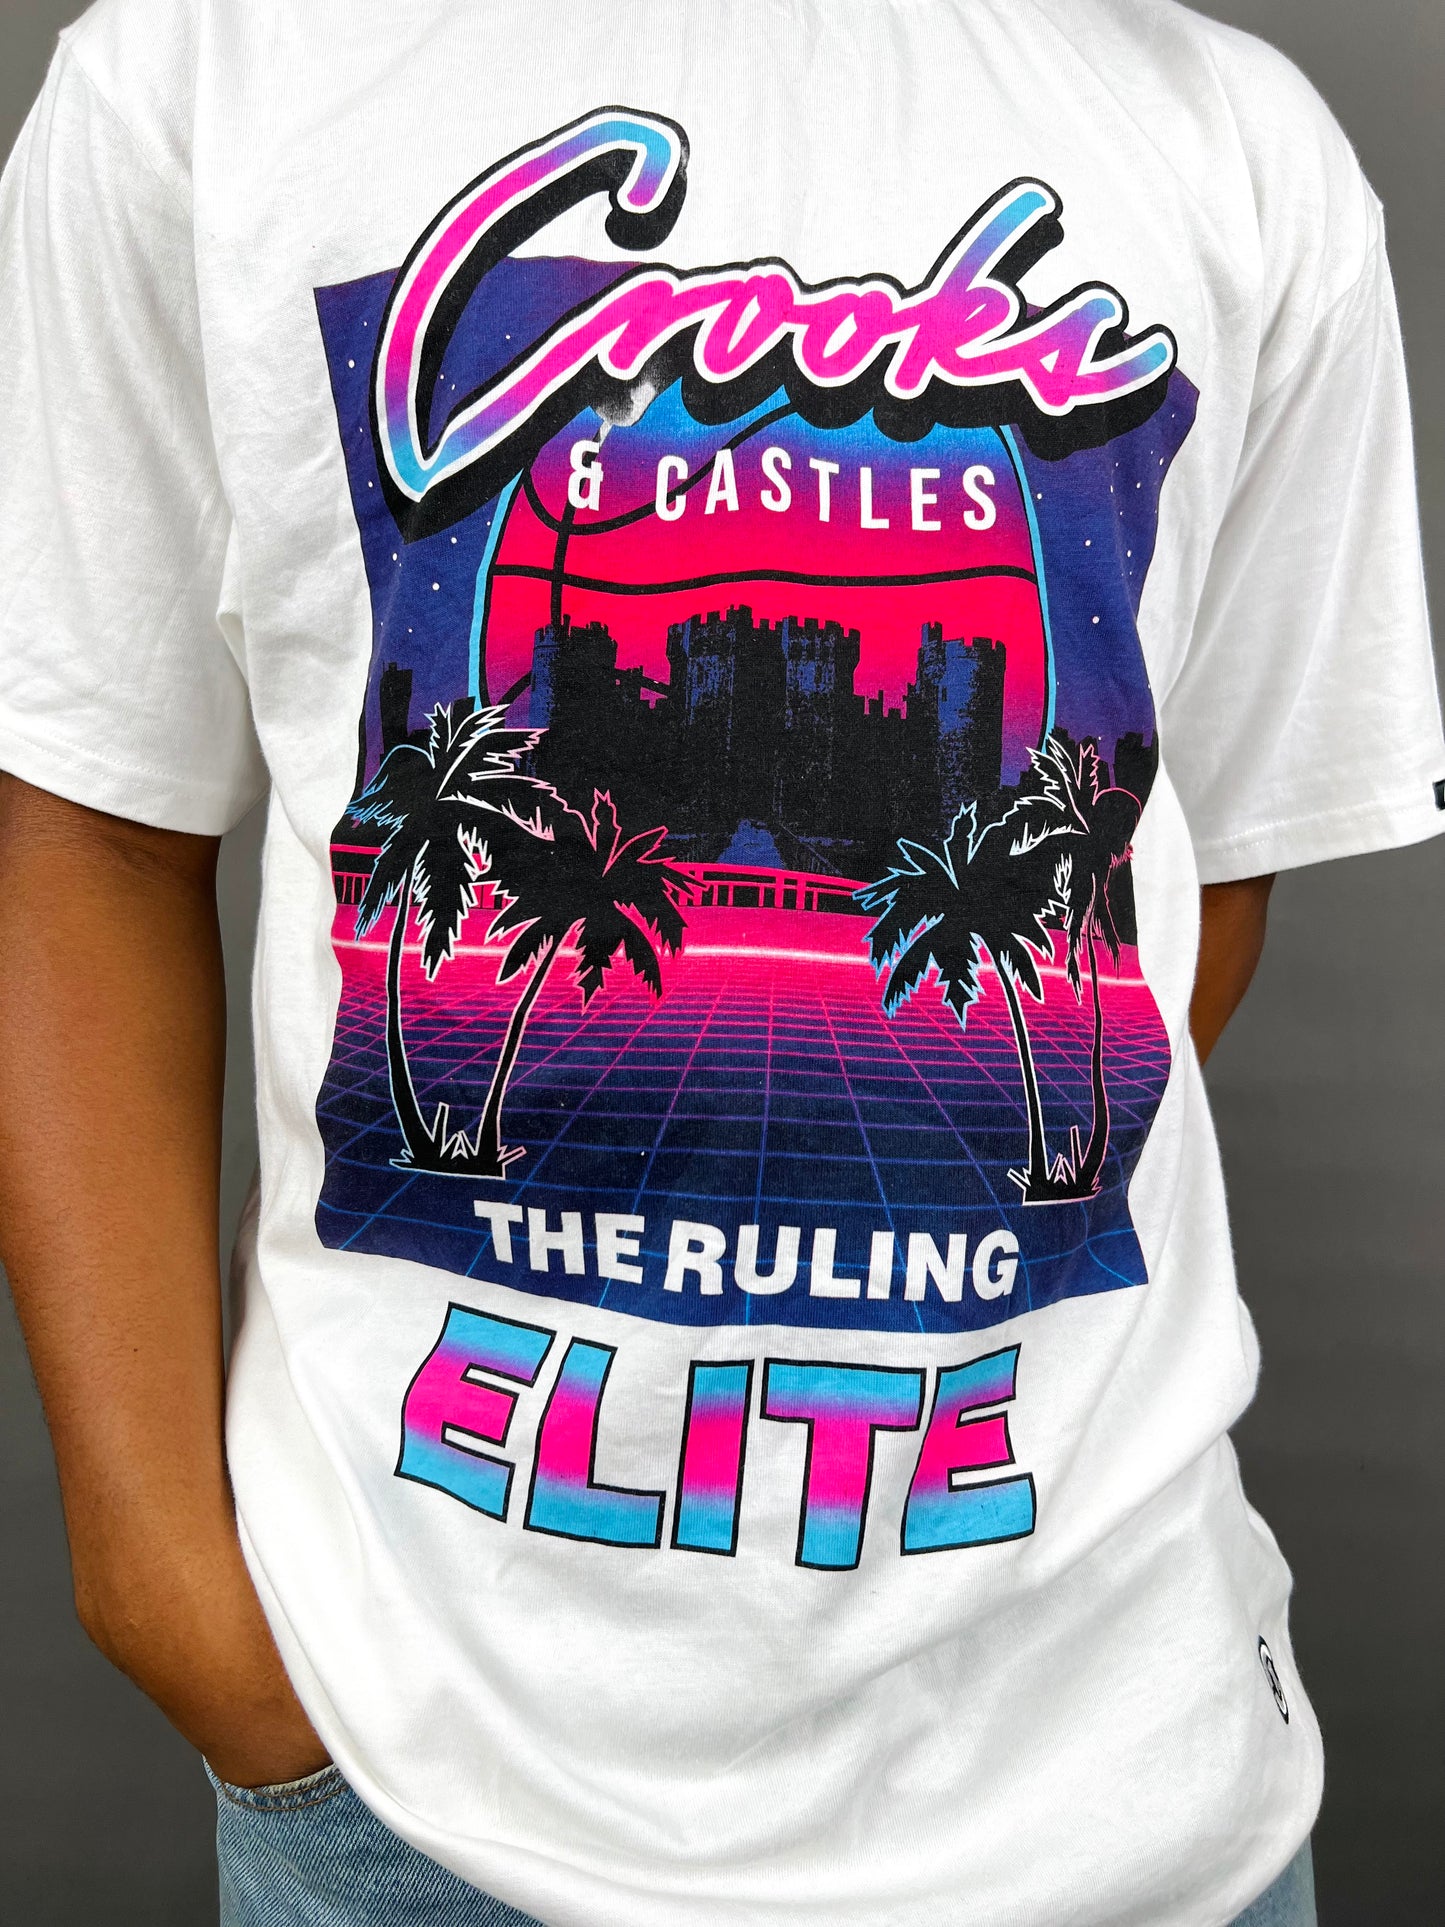 Crooks & Castles Elite T-shirt in white